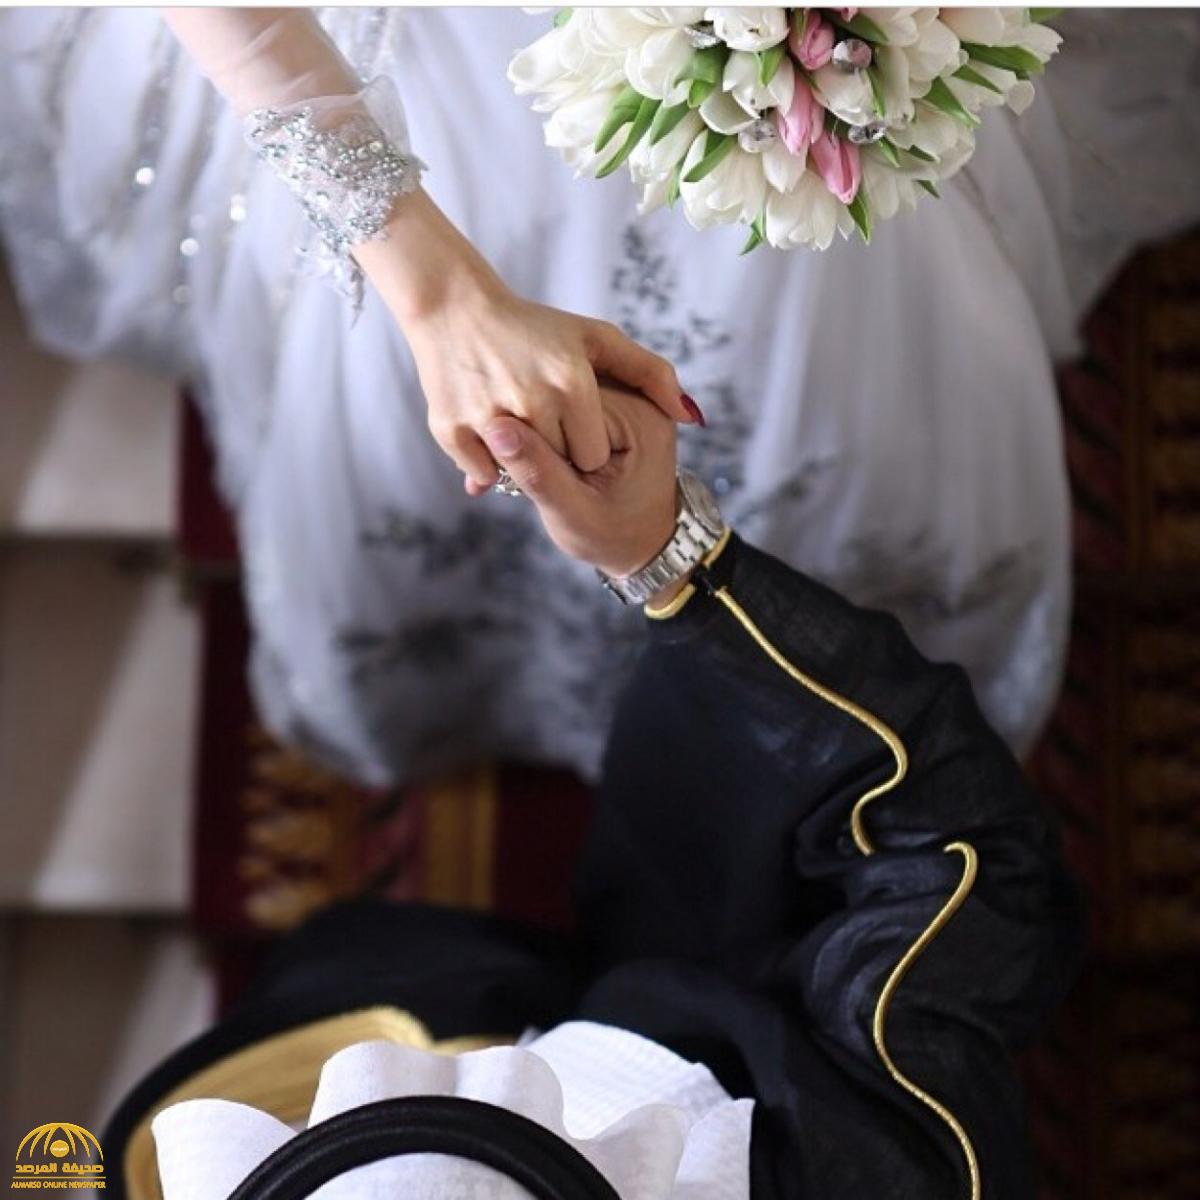 فتاة سعودية تسأل عن محال رخيصة لإتمام زفافها في الدمام .... فتنهال عليها الهدايا والمساعدات !